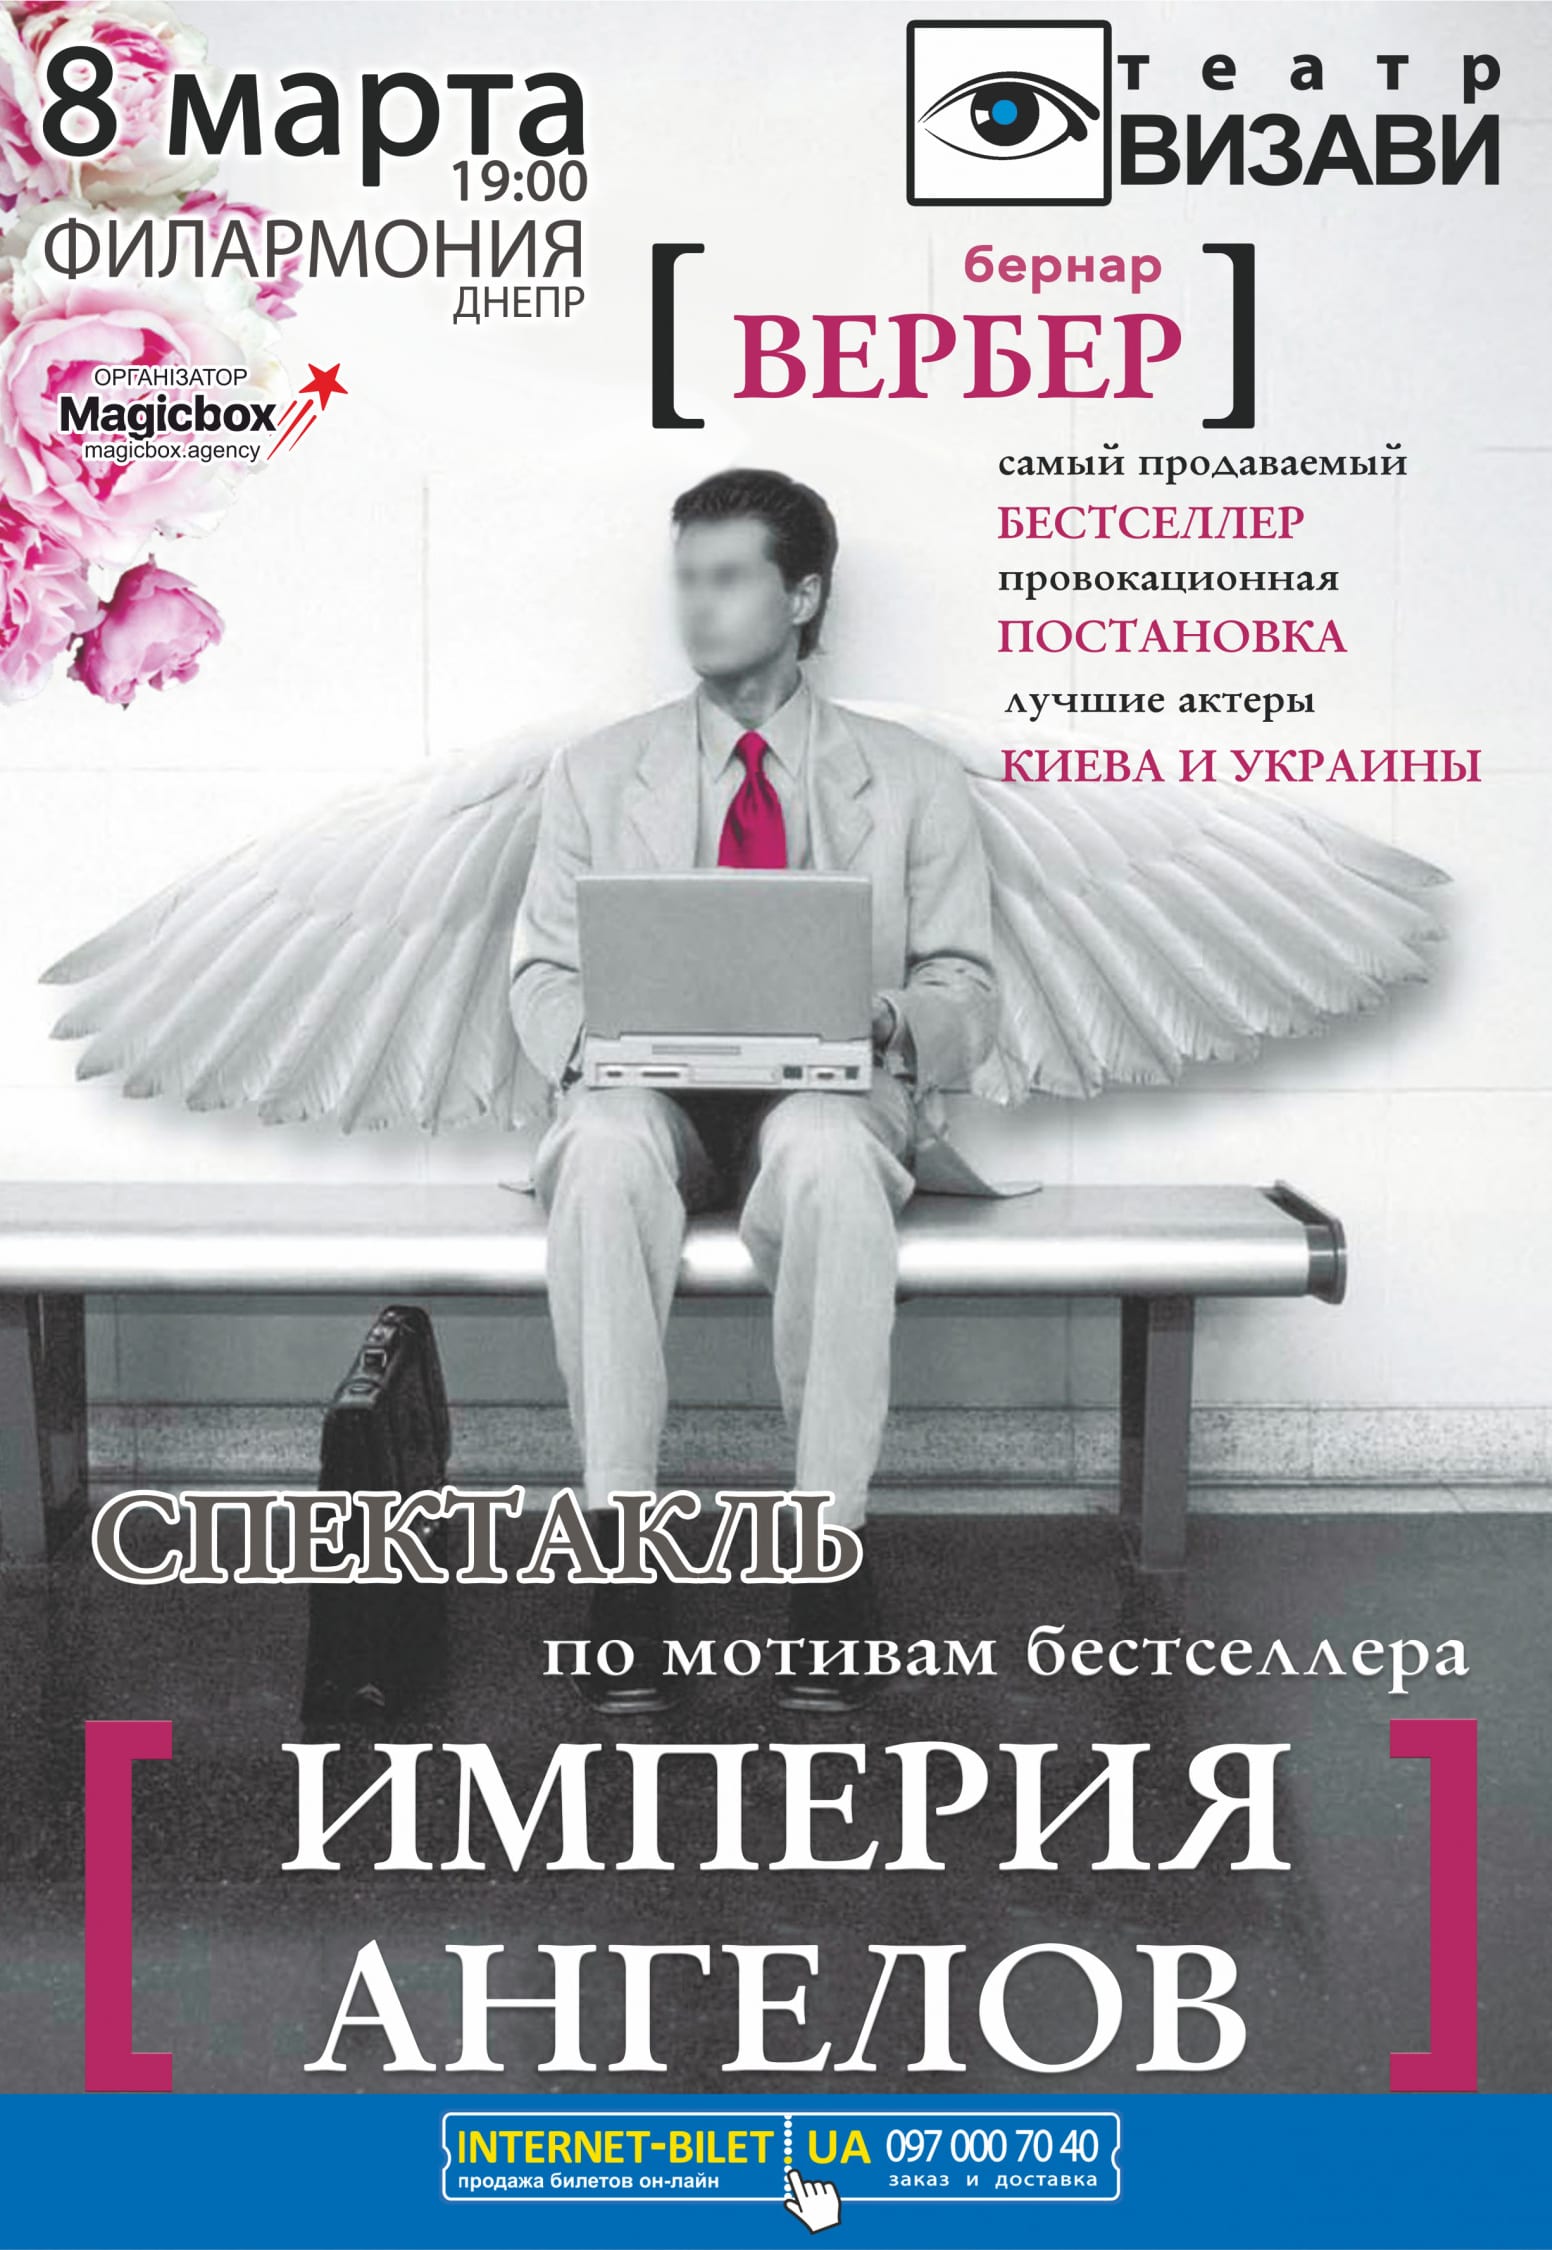 Театр "Визави" Империя Ангелов Днепр, цены, расписание, купить билеты. Афиша Днепра